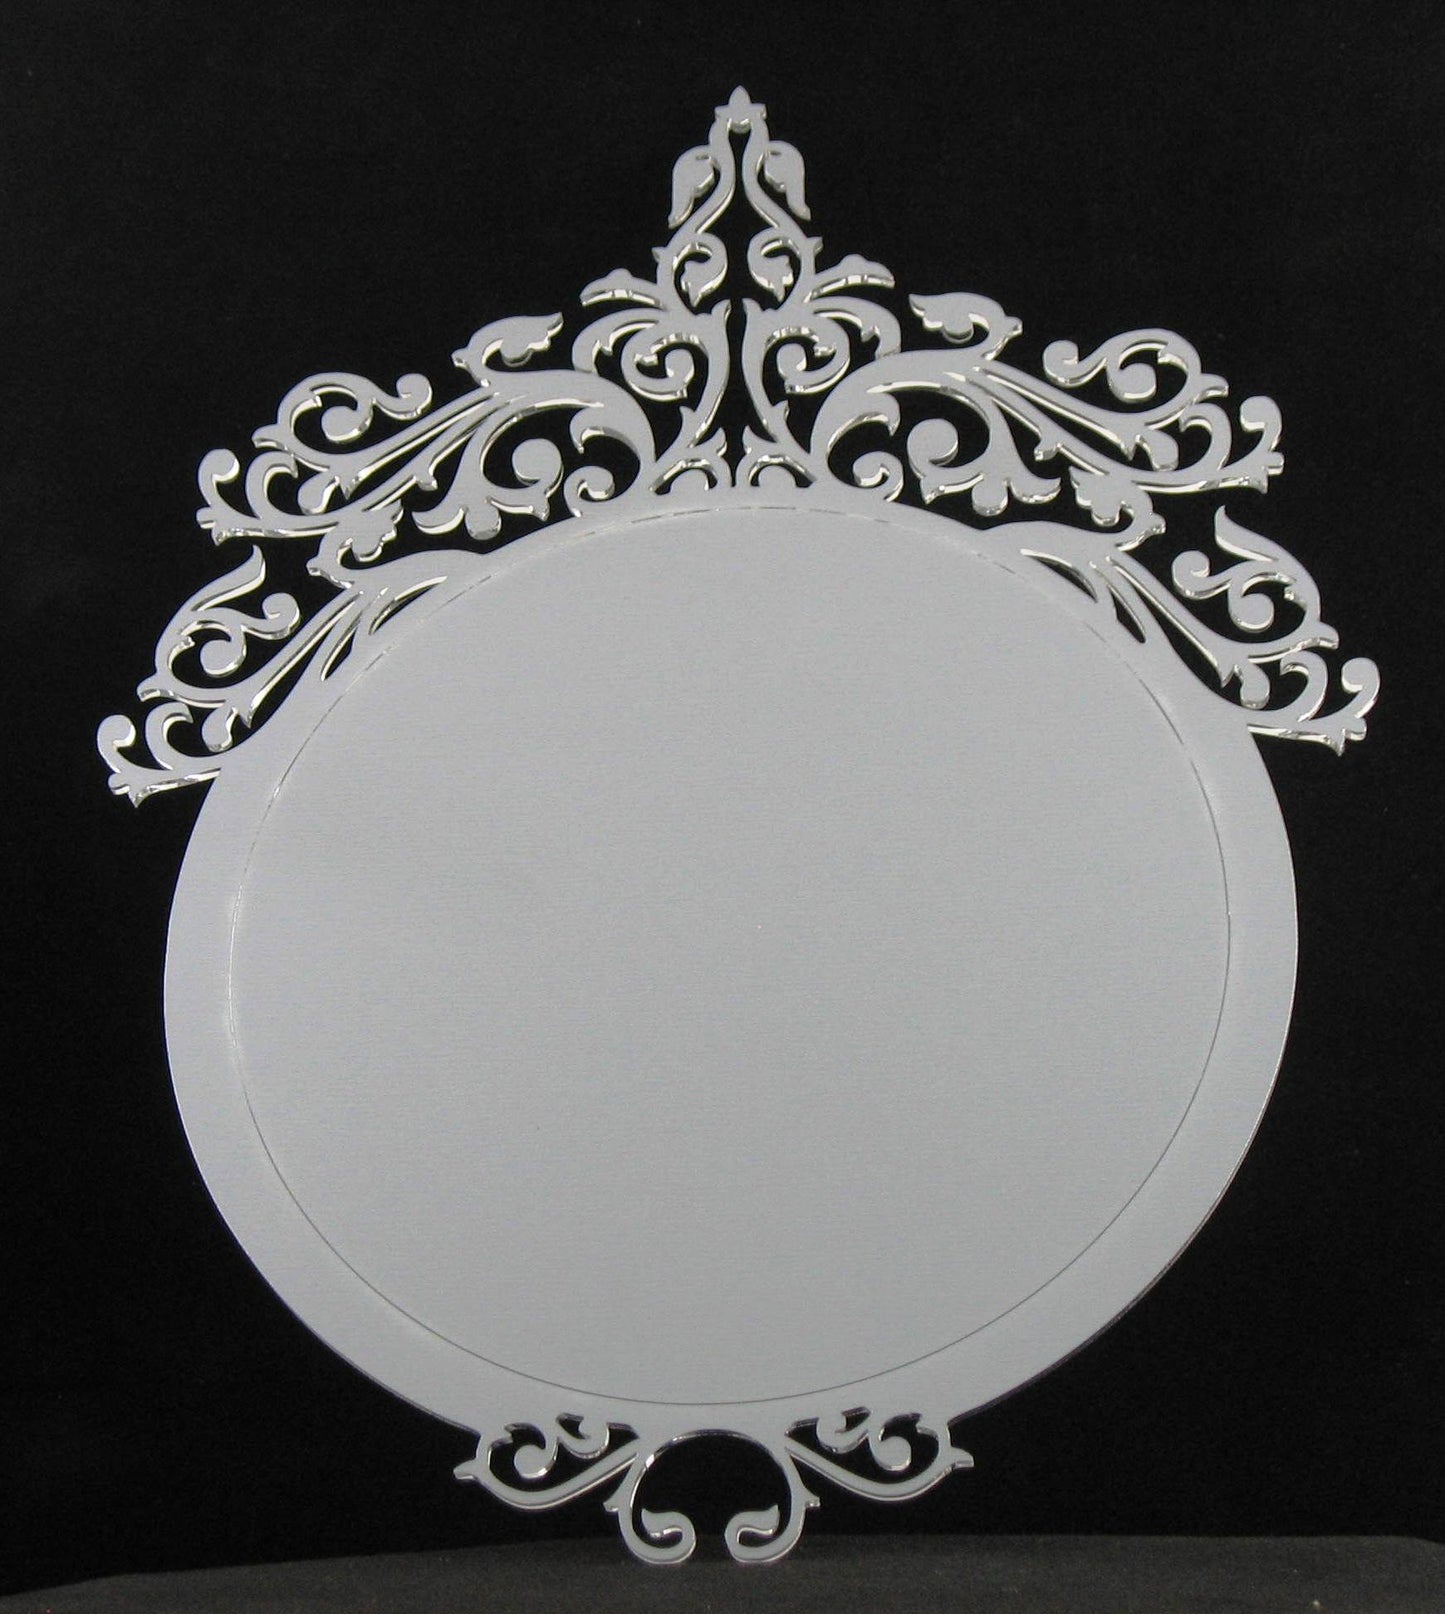 Round Decorative Mirror